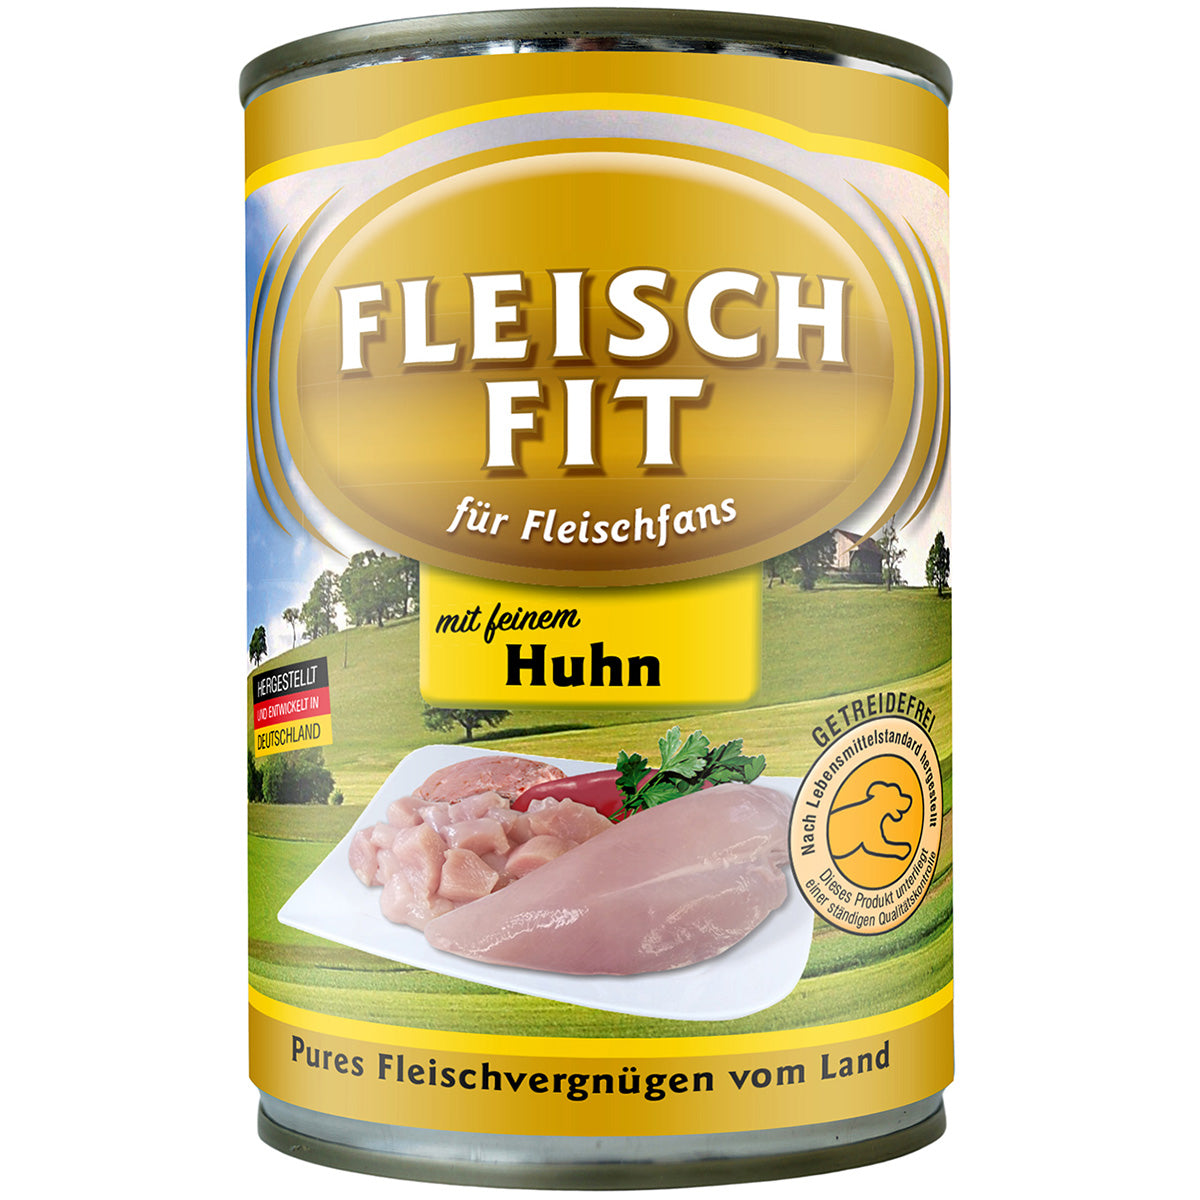 FleischFit mit Huhn, 400g